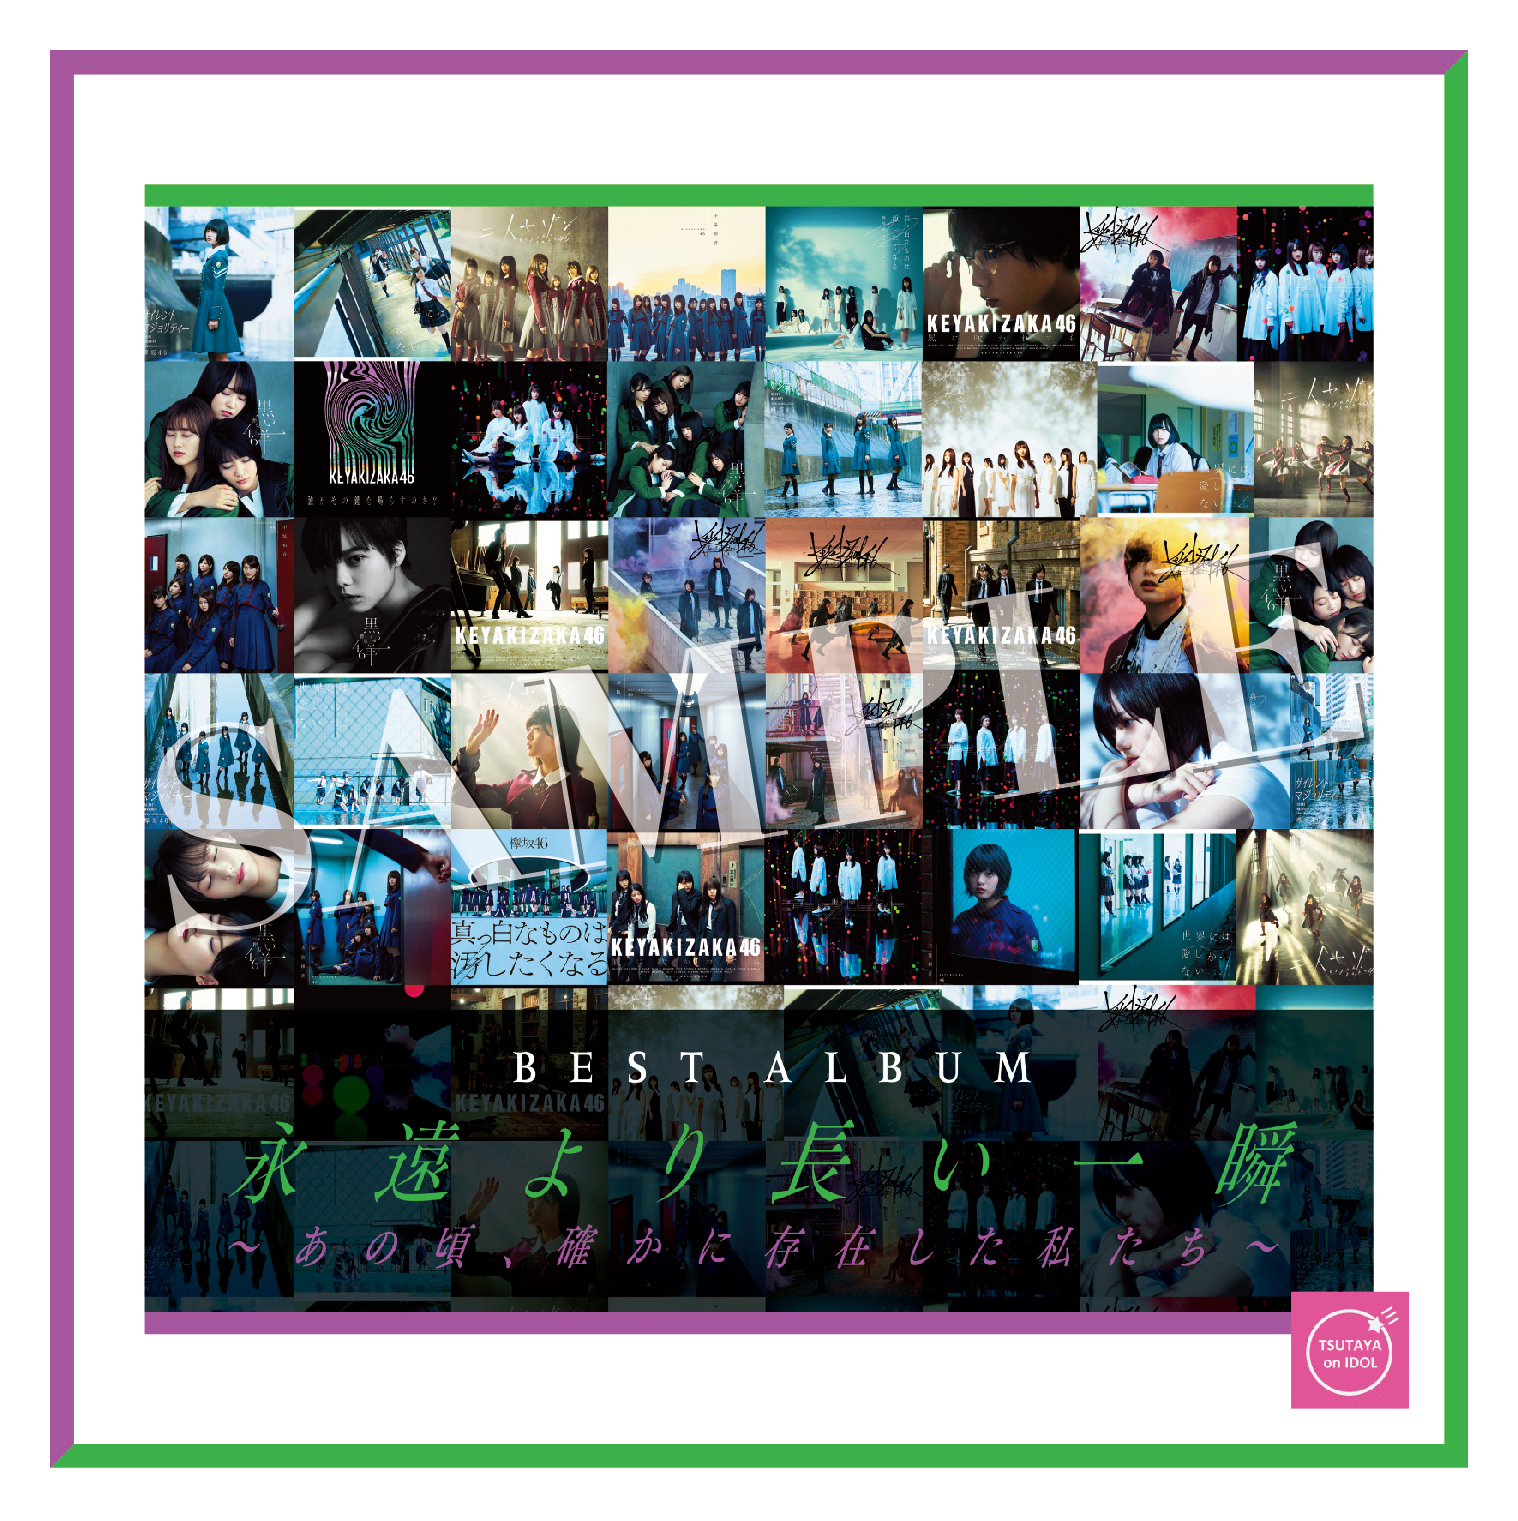 10月7日(水)発売 欅坂46 ベストアルバム CDショップチェーン別先着特典絵柄が決定! | ニュース | 欅坂46公式サイト